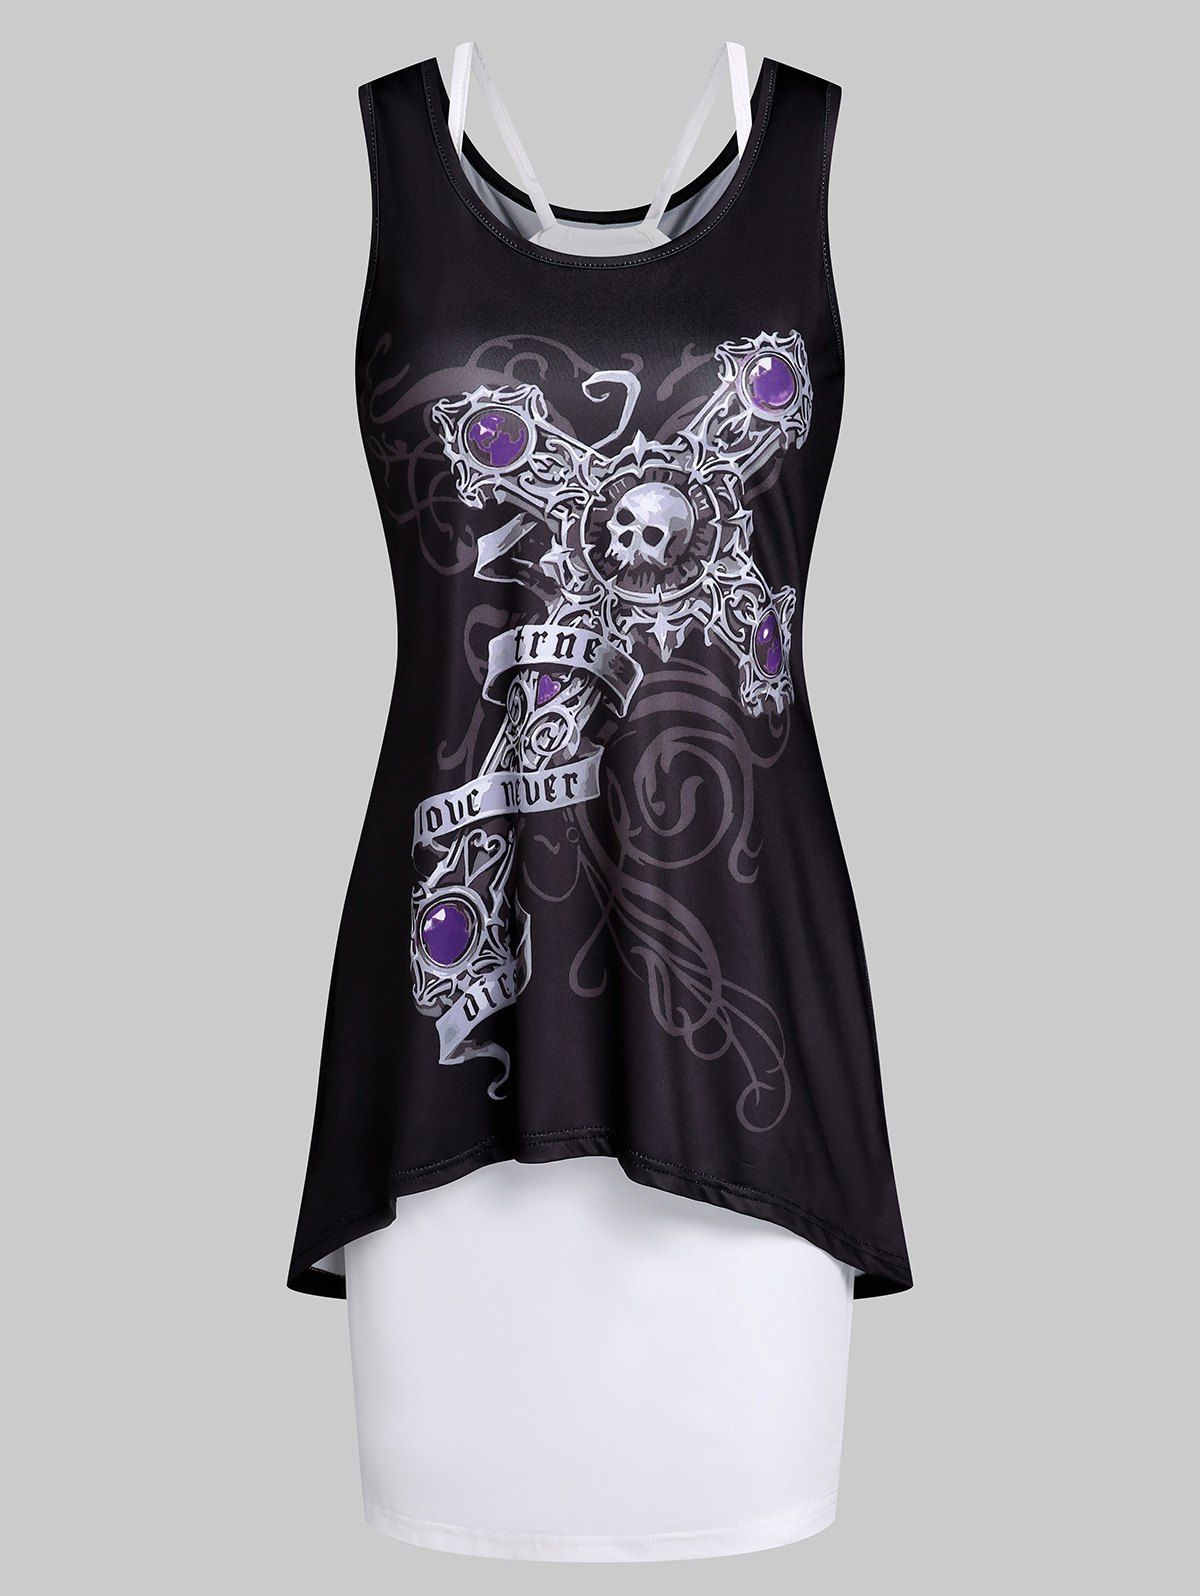 Skull Cross Print Tank Dress And Cami Dress Two Piece Set - BLACK L